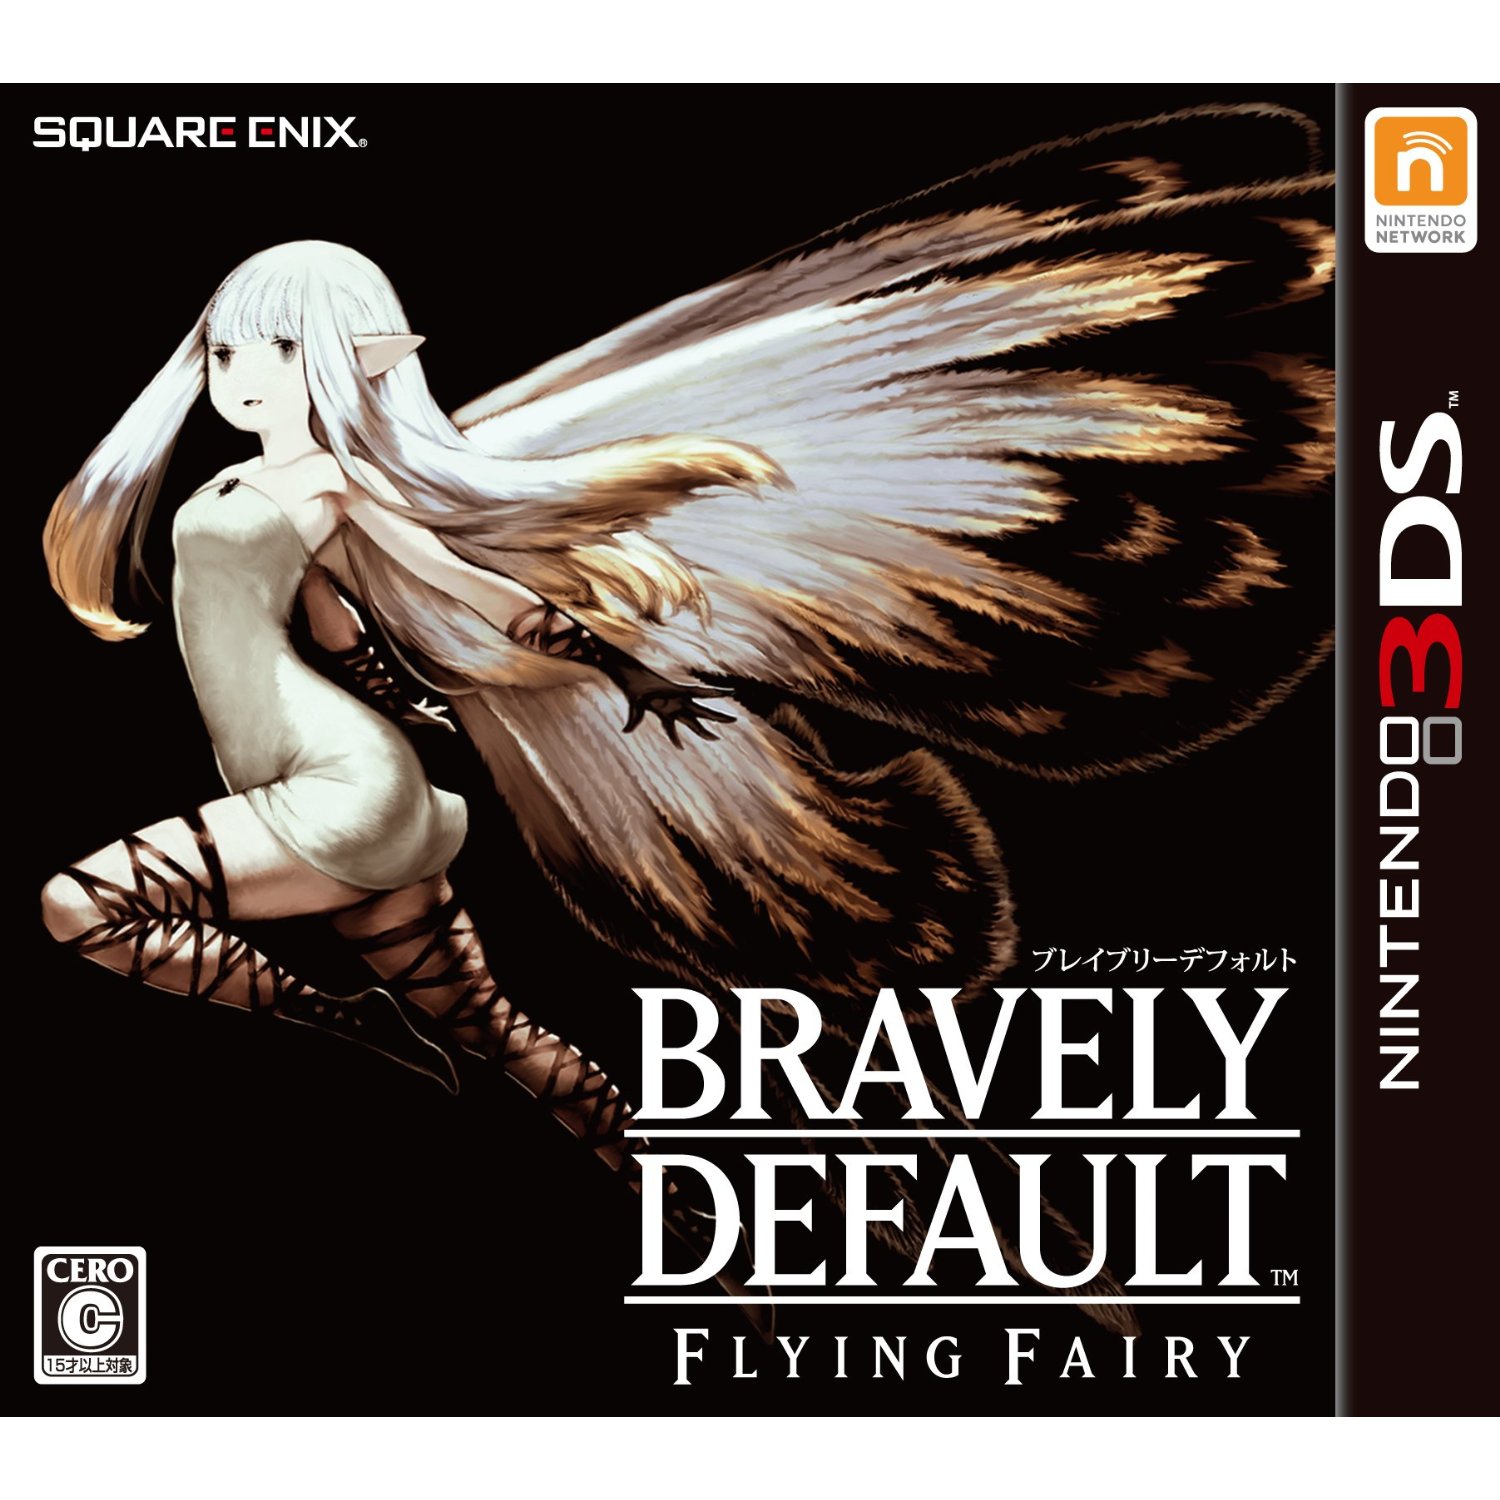 Bravely Default: Flying Fairy boxart